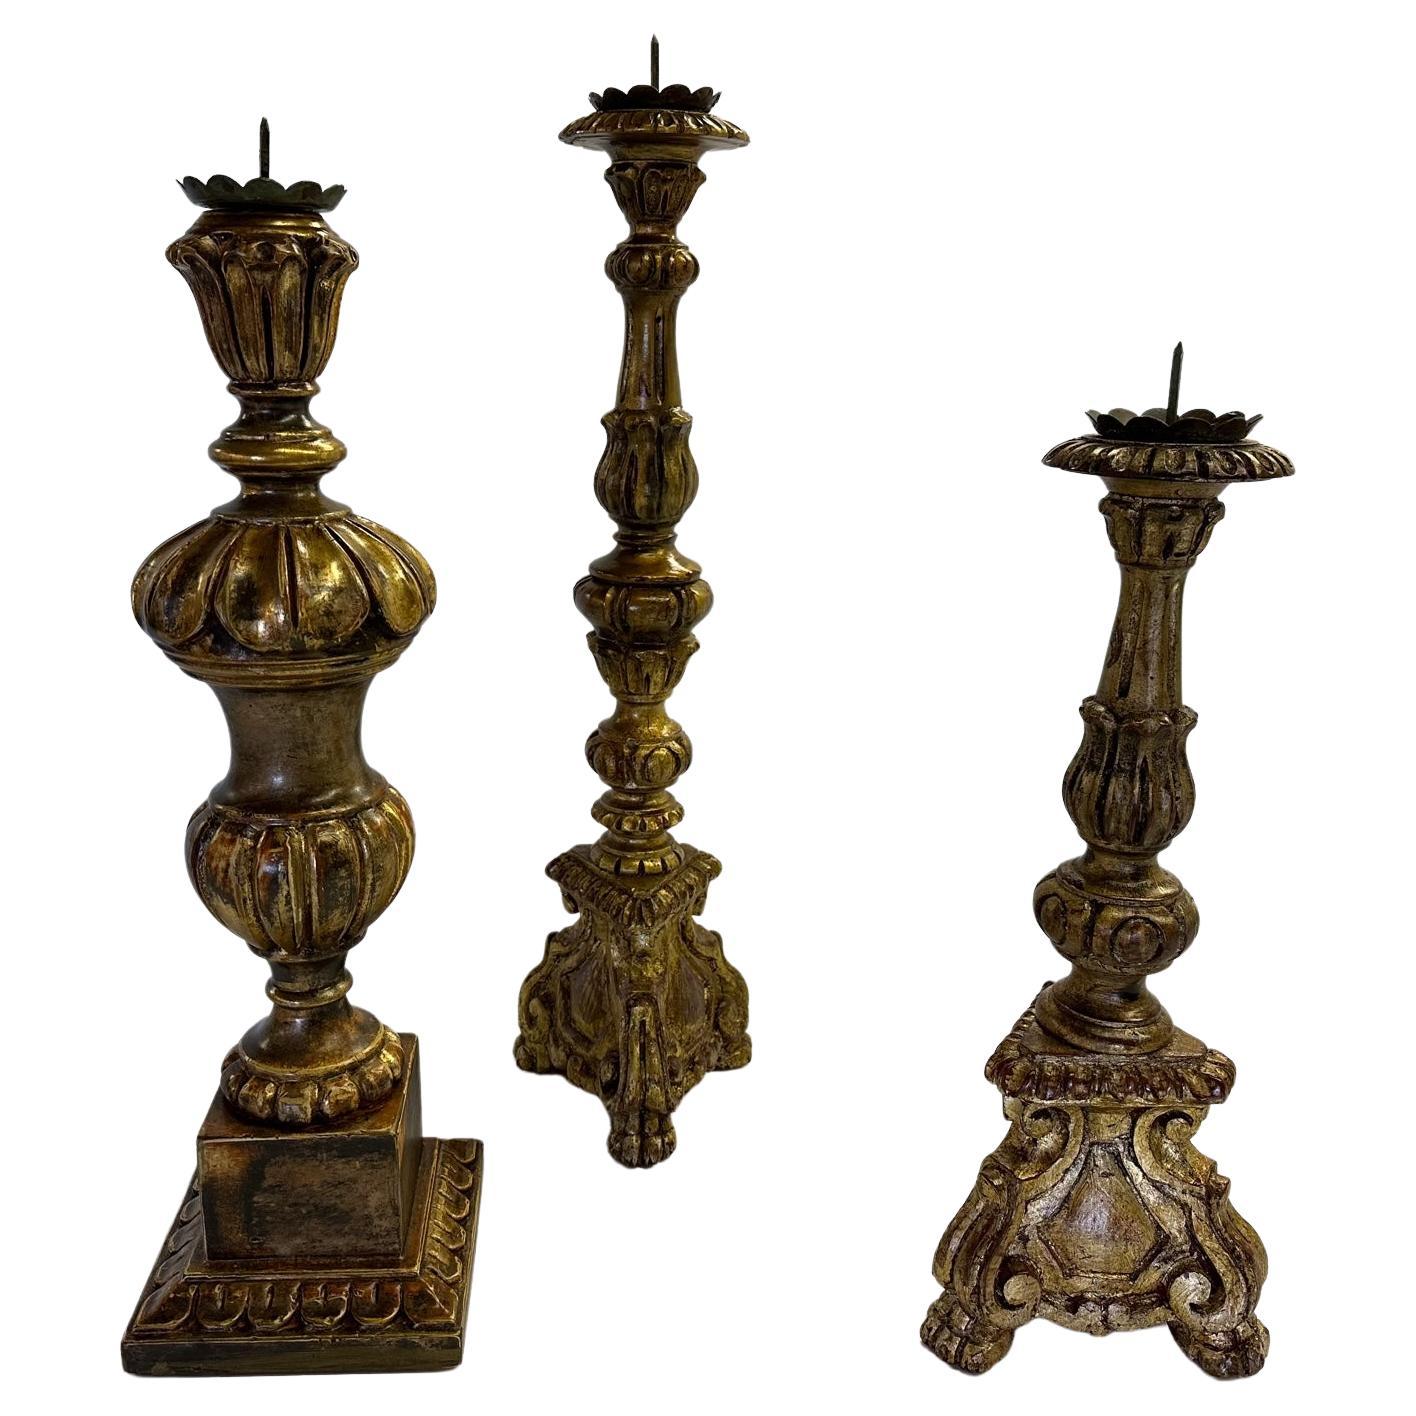 Collection assemblée de 3 bougeoirs romantiques vintage sculptés et dorés à la main